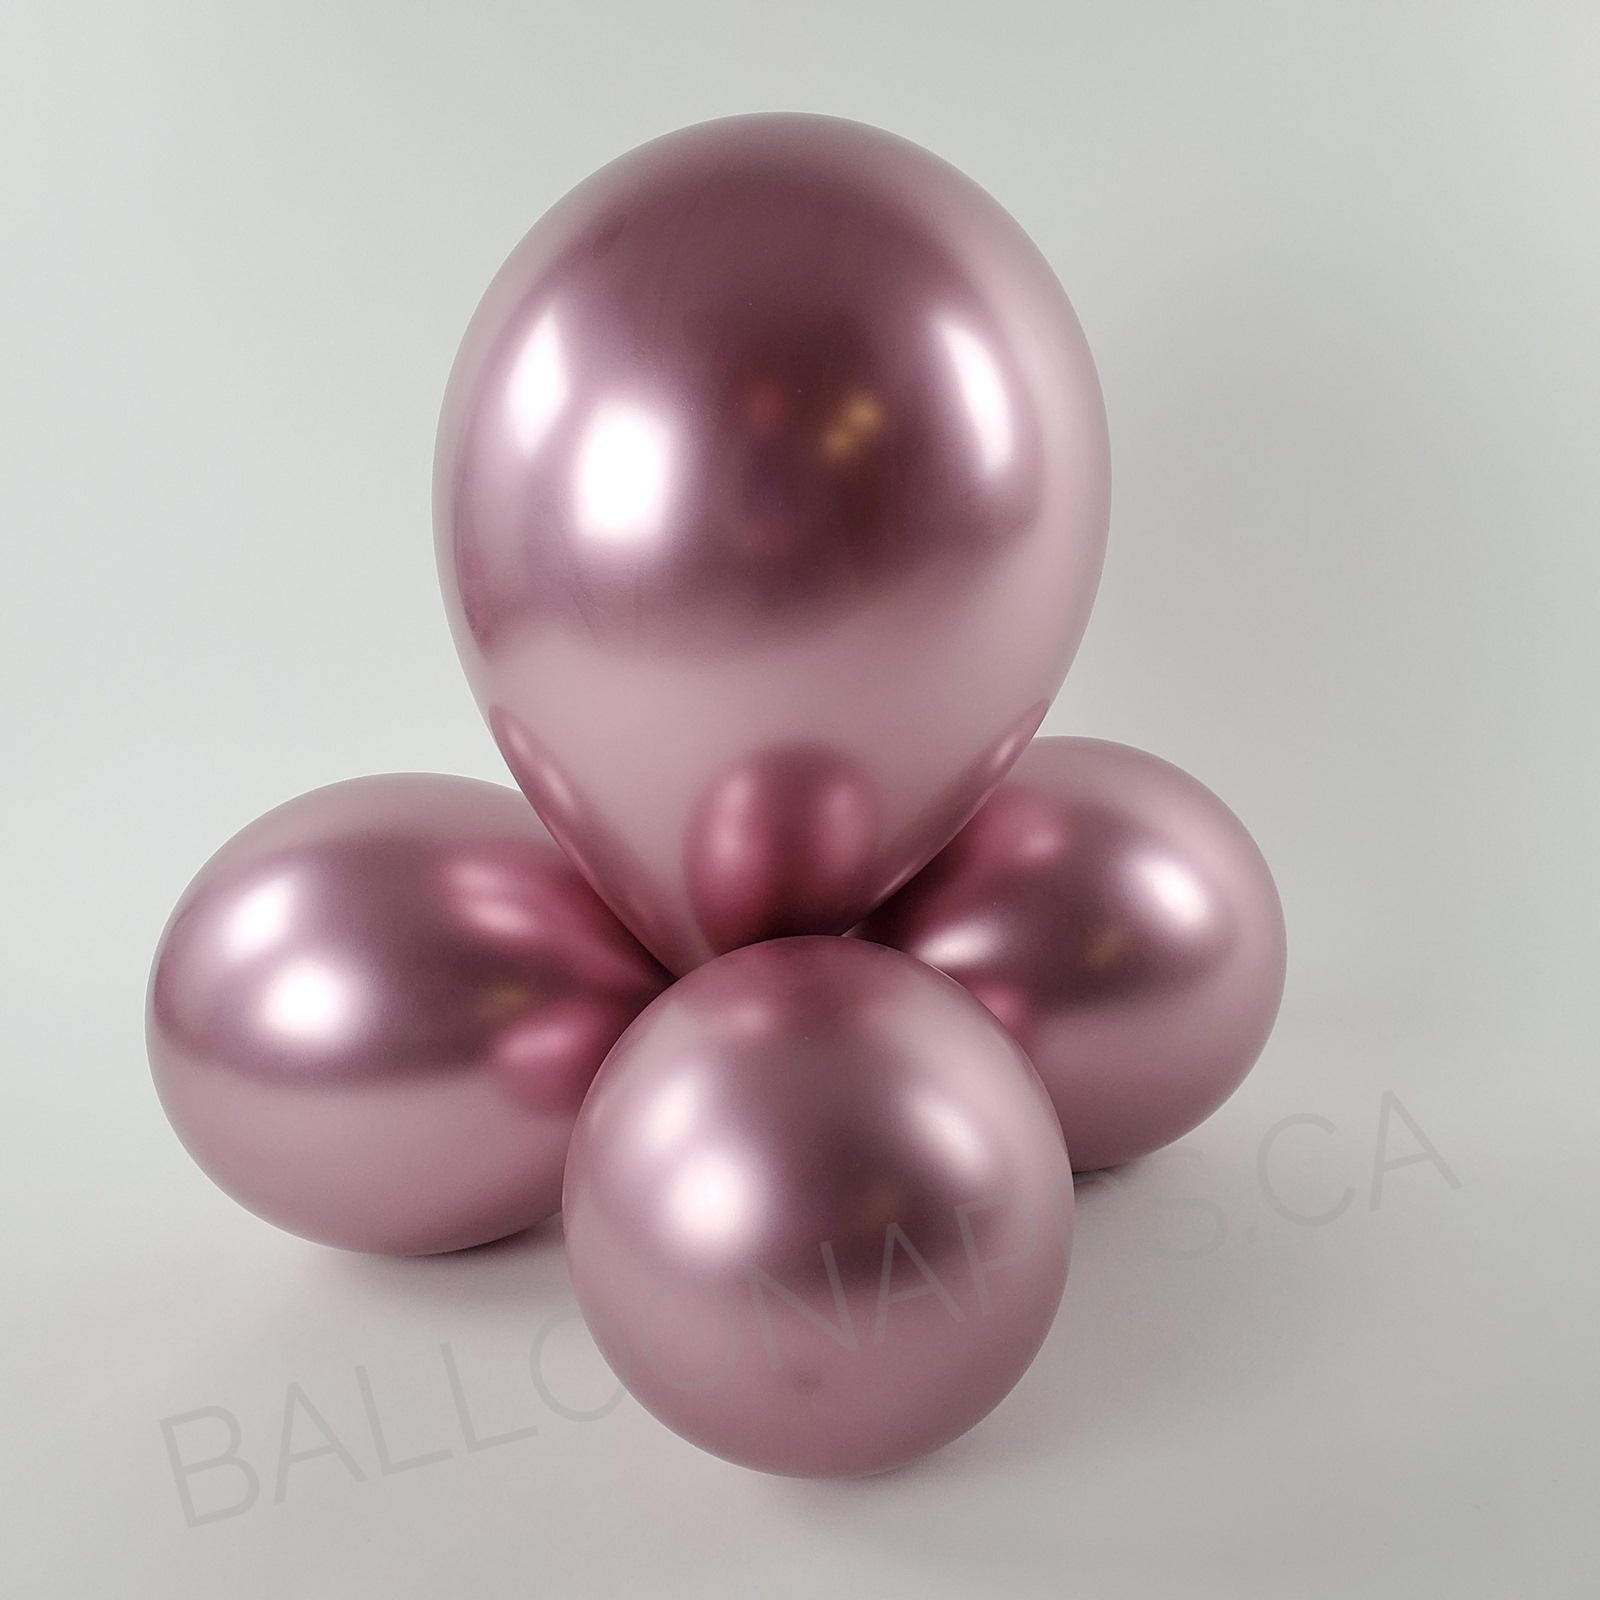 balloon texture Sempertex 260 Reflex Pink